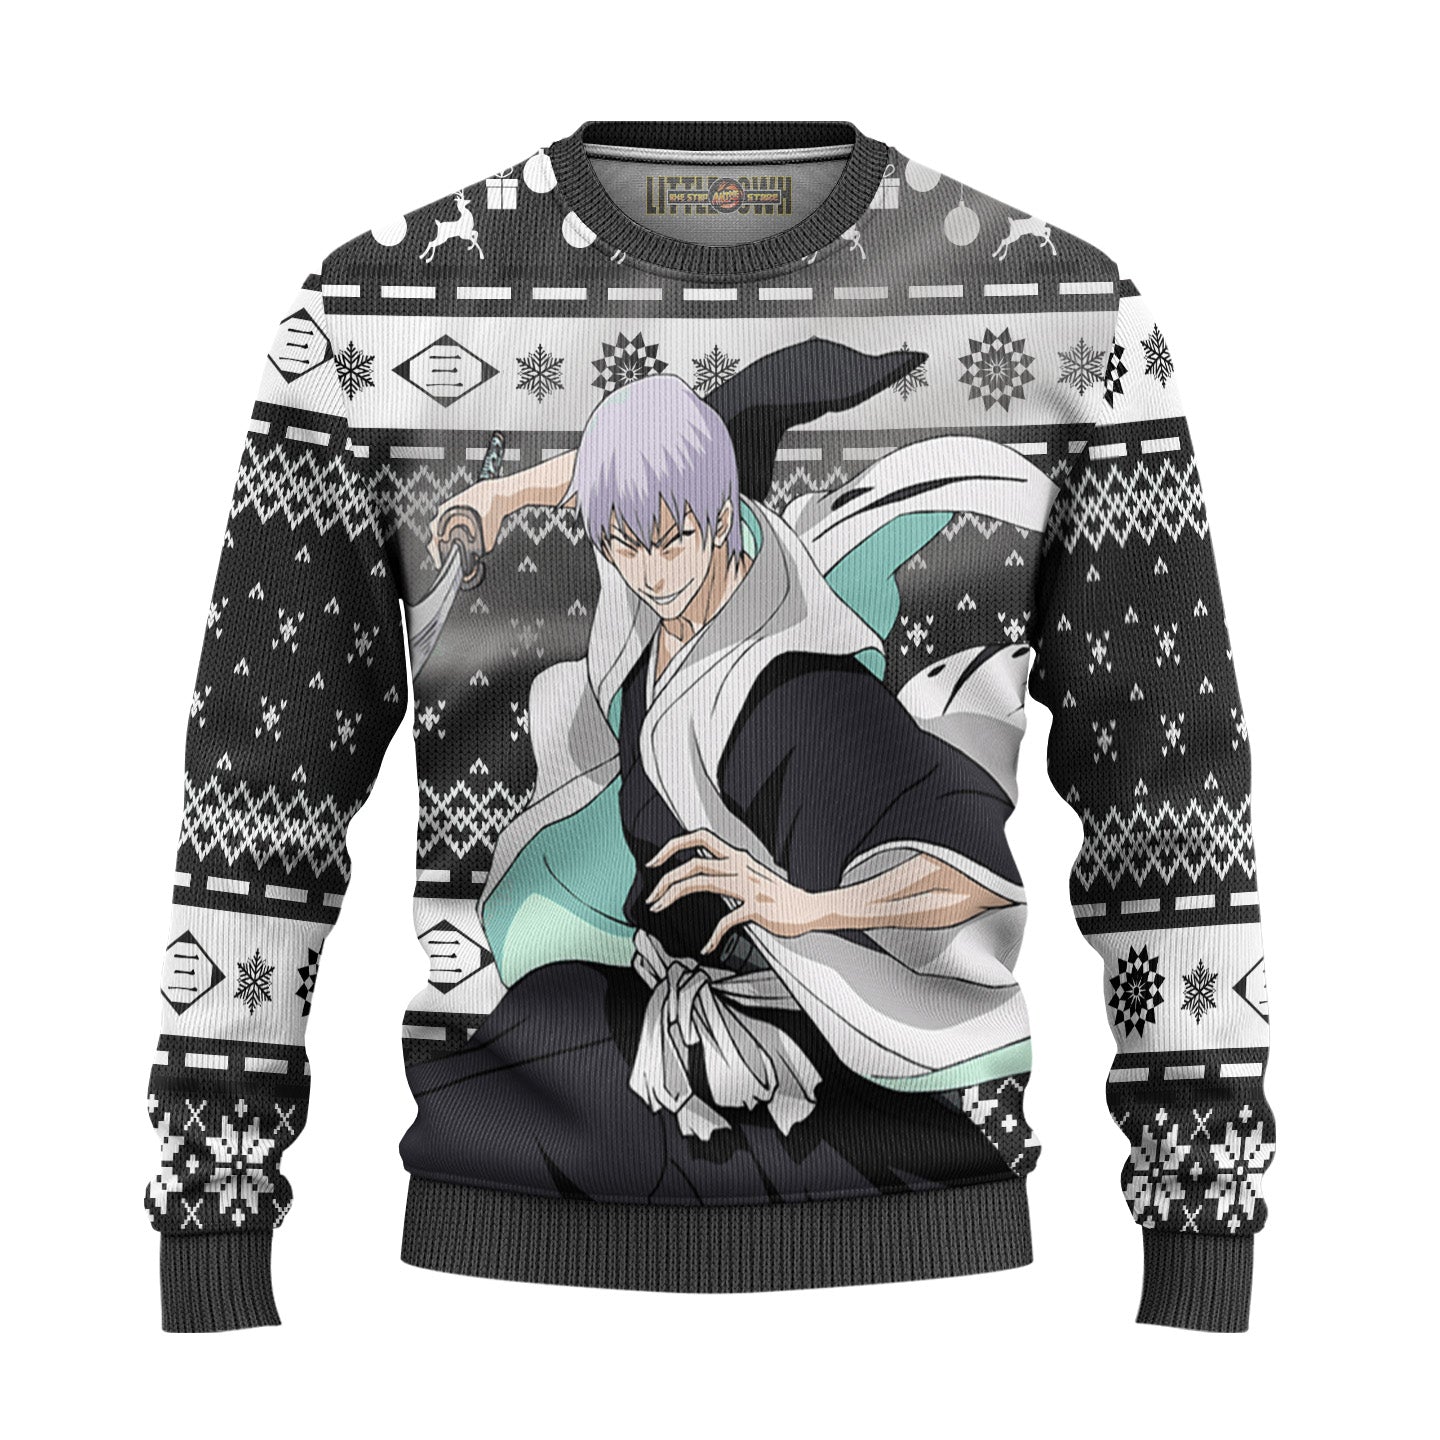 Gin Ichimaru Ugly Christmas Sweater Custom Bleach Anime New Design